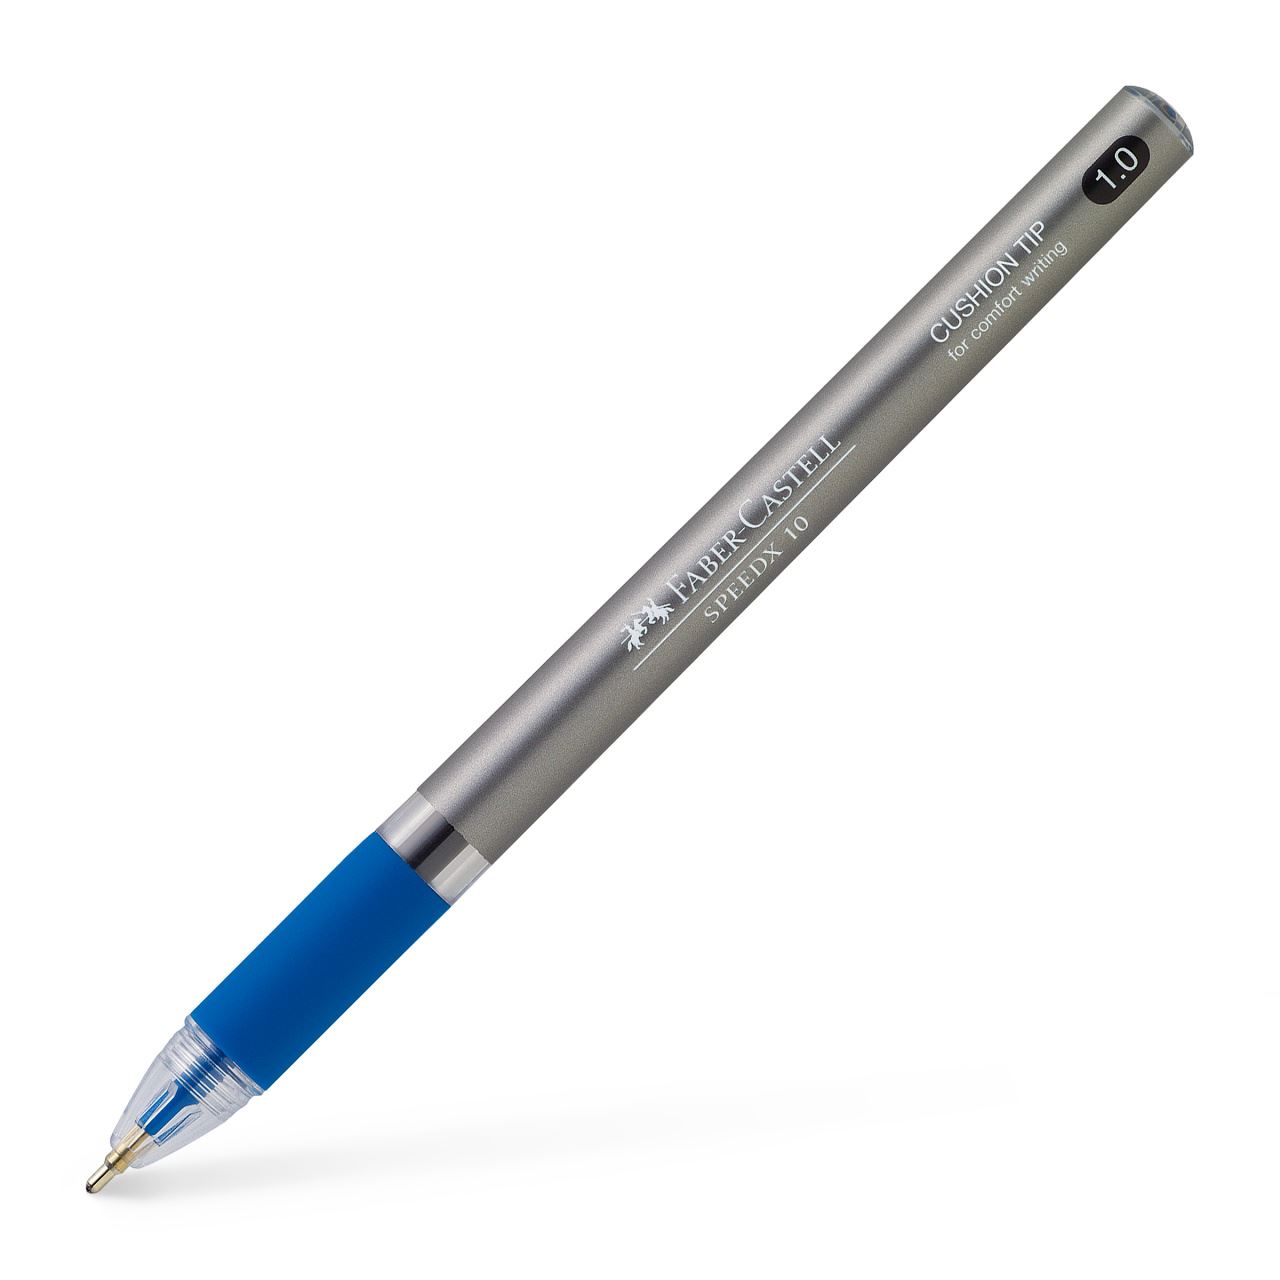 Faber-Castell - Speedx Kugelschreiber, 1.0 mm, blau